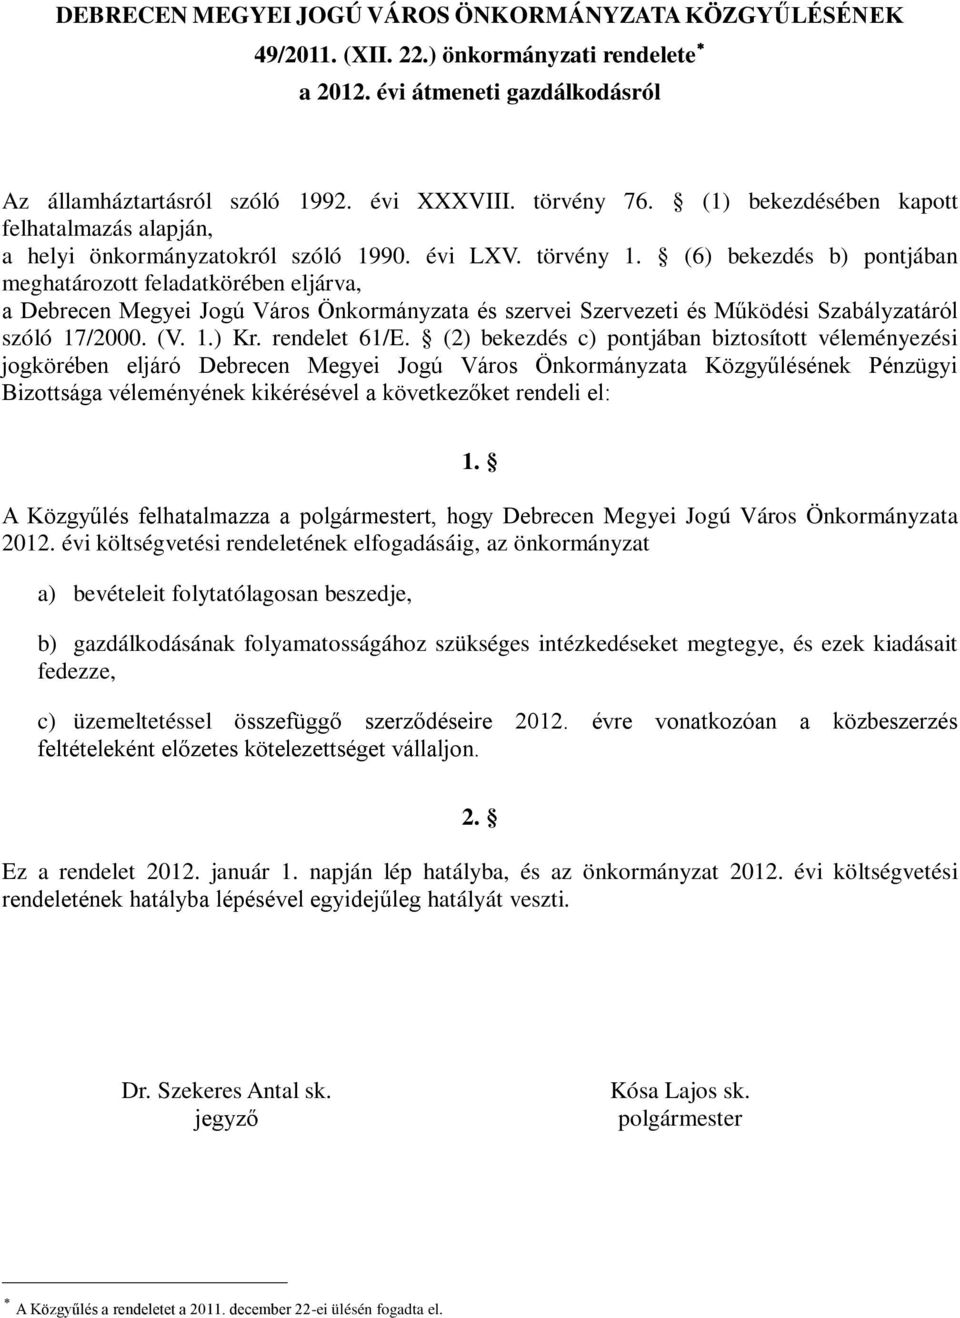 (6) bekezdés b) pontjában meghatározott feladatkörében eljárva, a Debrecen Megyei Jogú Város Önkormányzata és szervei Szervezeti és Működési Szabályzatáról szóló 17/2000. (V. 1.) Kr. rendelet 61/E.